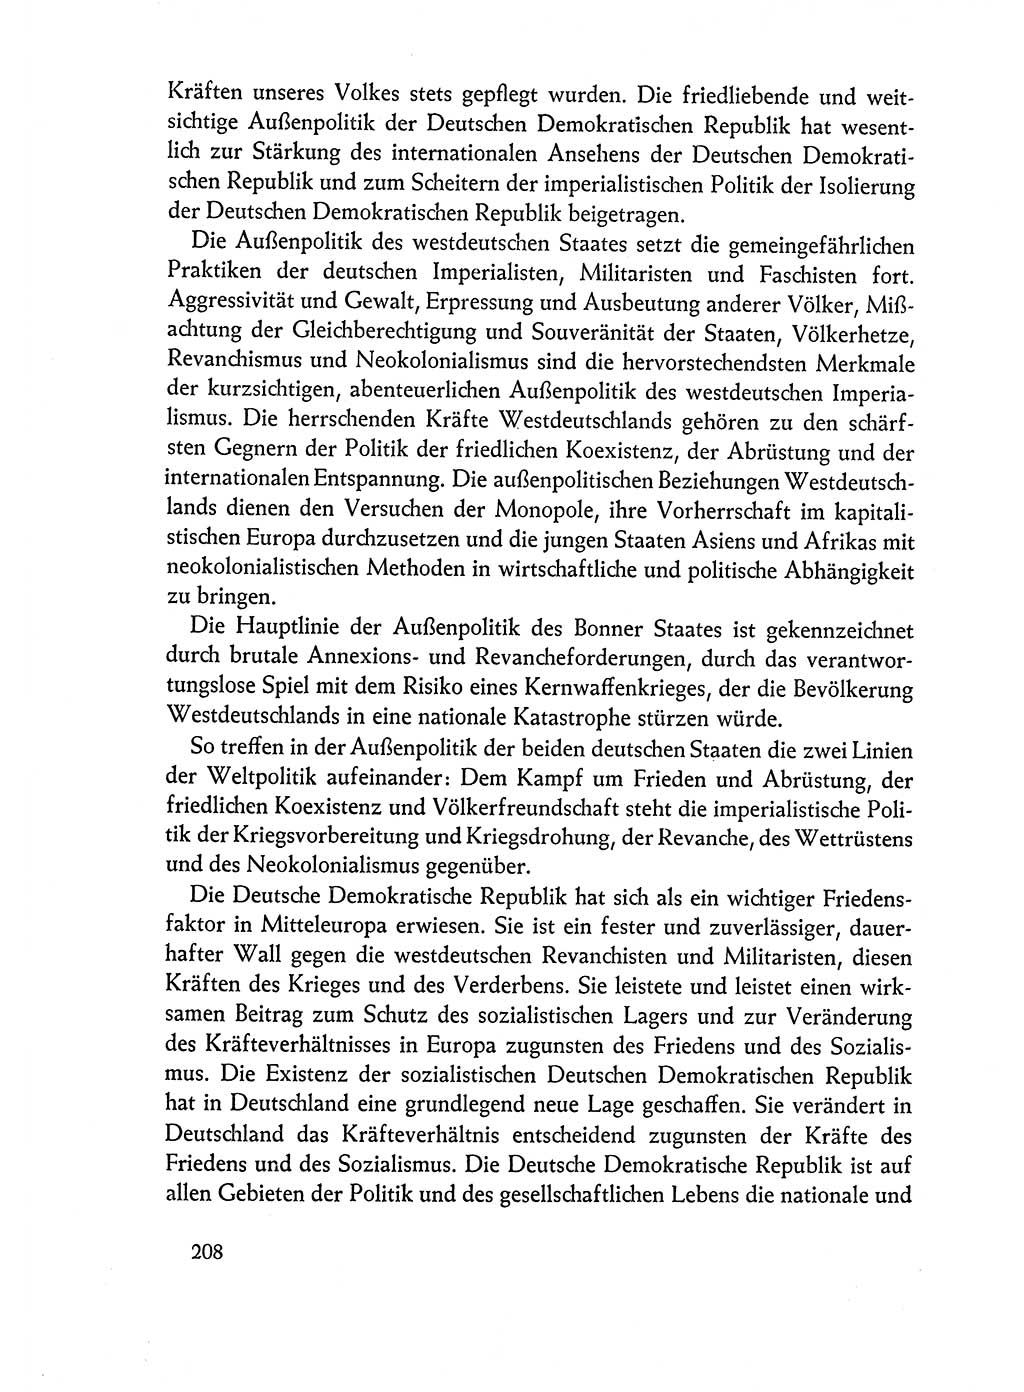 Dokumente der Sozialistischen Einheitspartei Deutschlands (SED) [Deutsche Demokratische Republik (DDR)] 1962-1963, Seite 208 (Dok. SED DDR 1962-1963, S. 208)